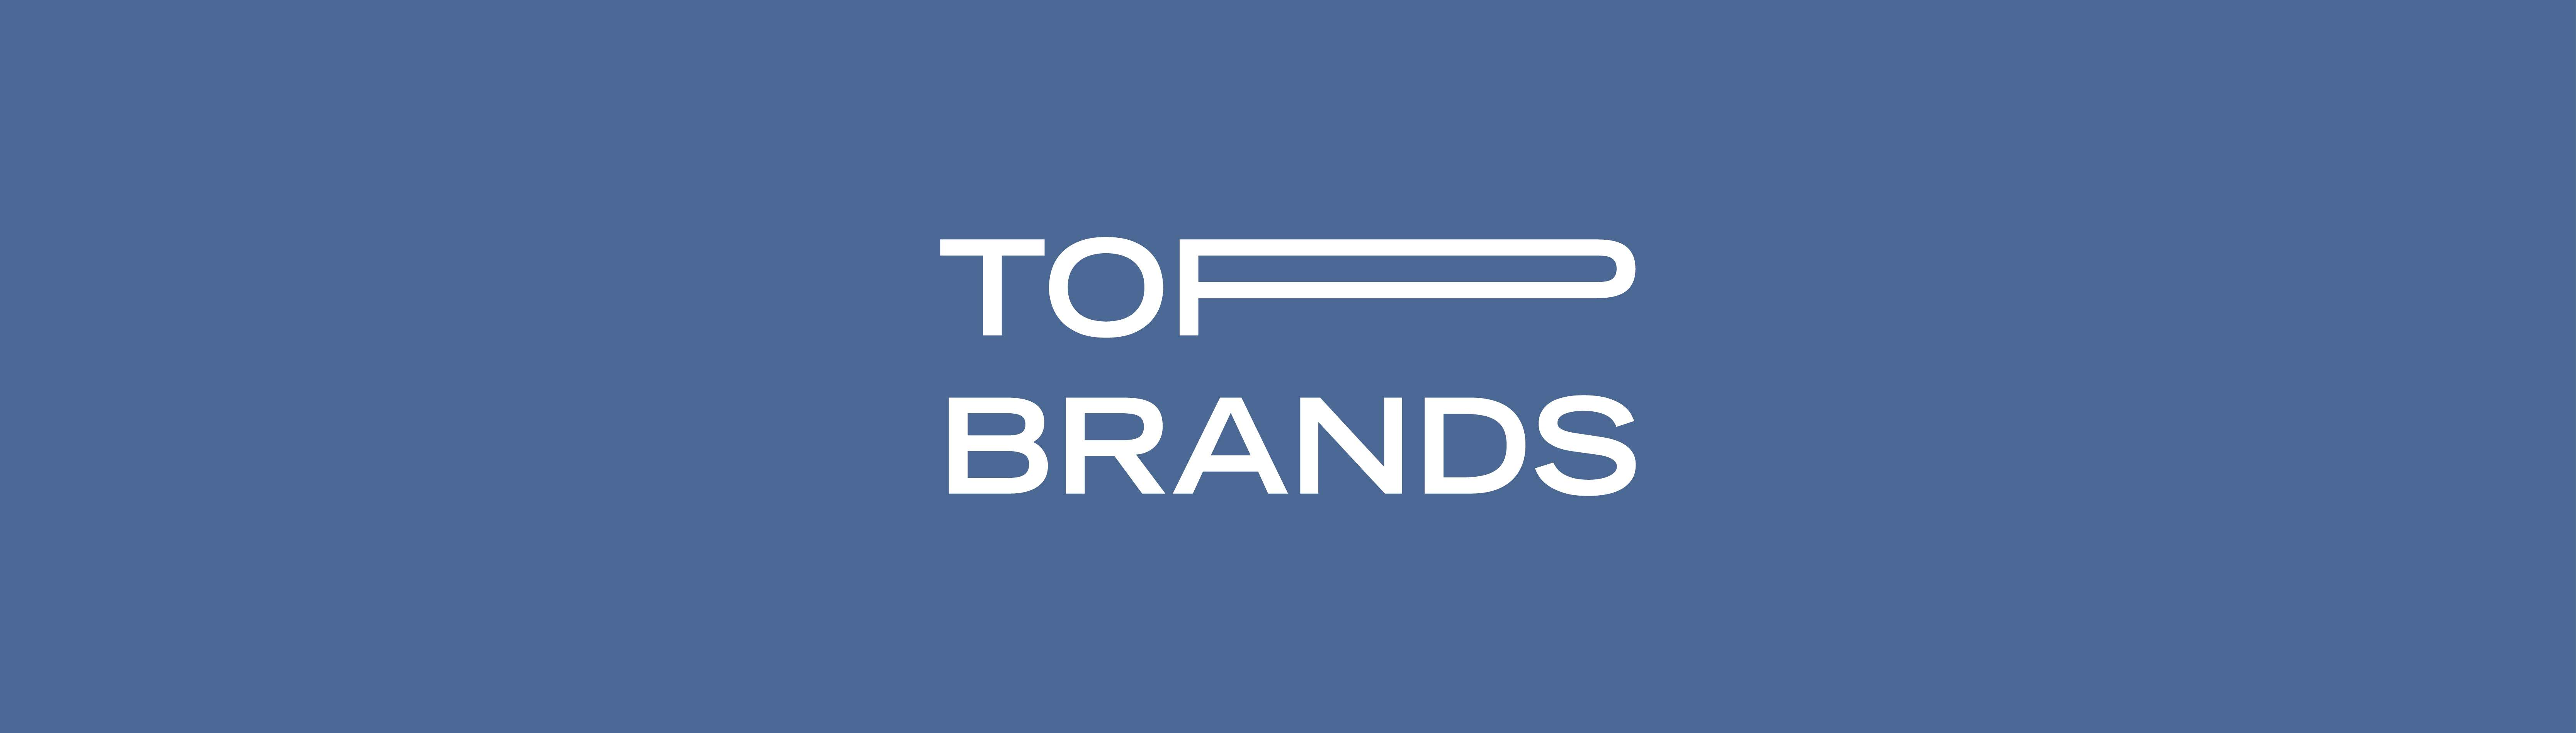 Top brands